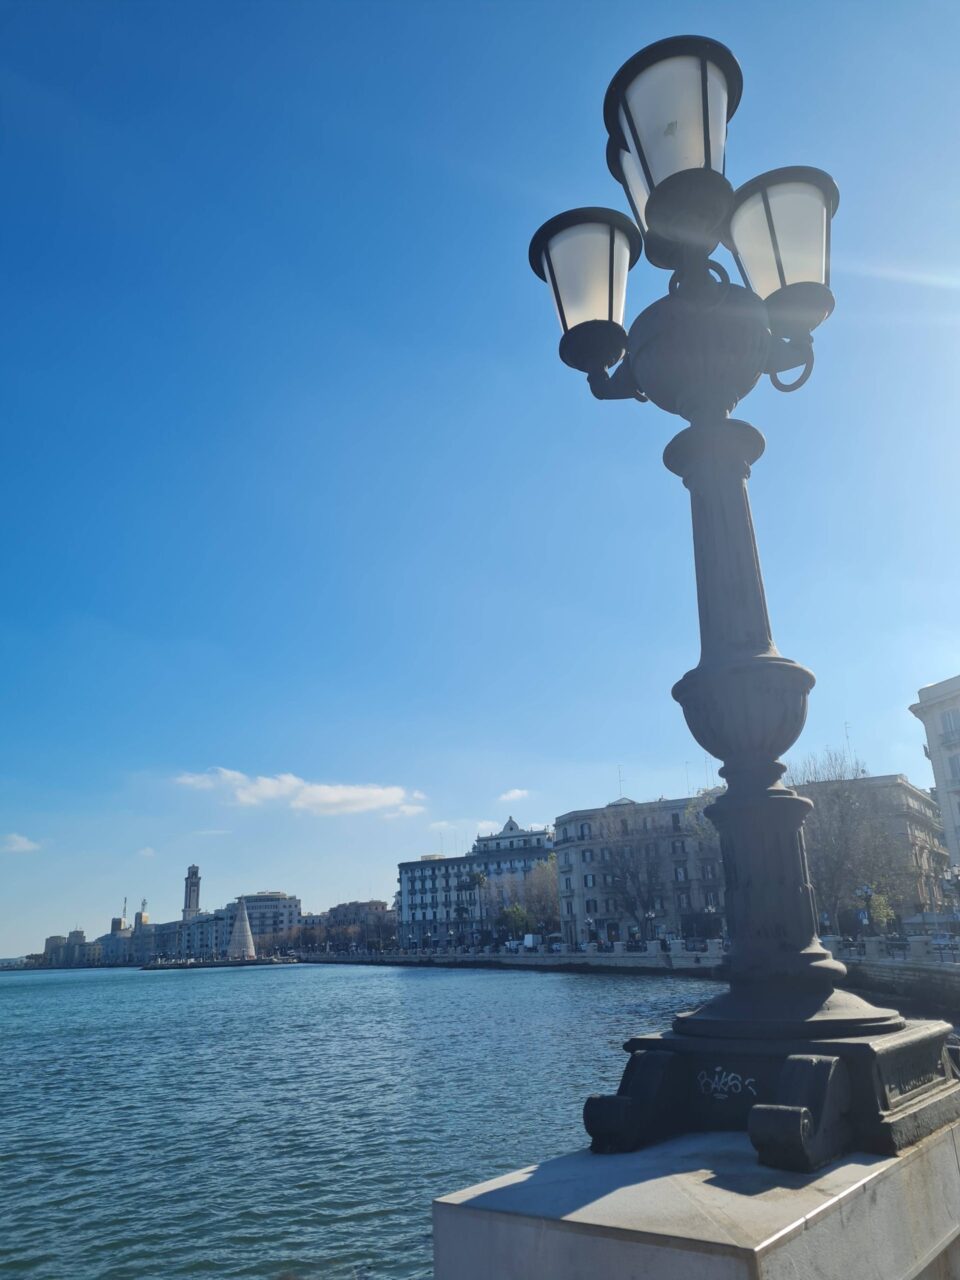 Il caratteristico lampione sul lungomare di Bari (sullo sfondo, la torre del Palazzo della Provincia)